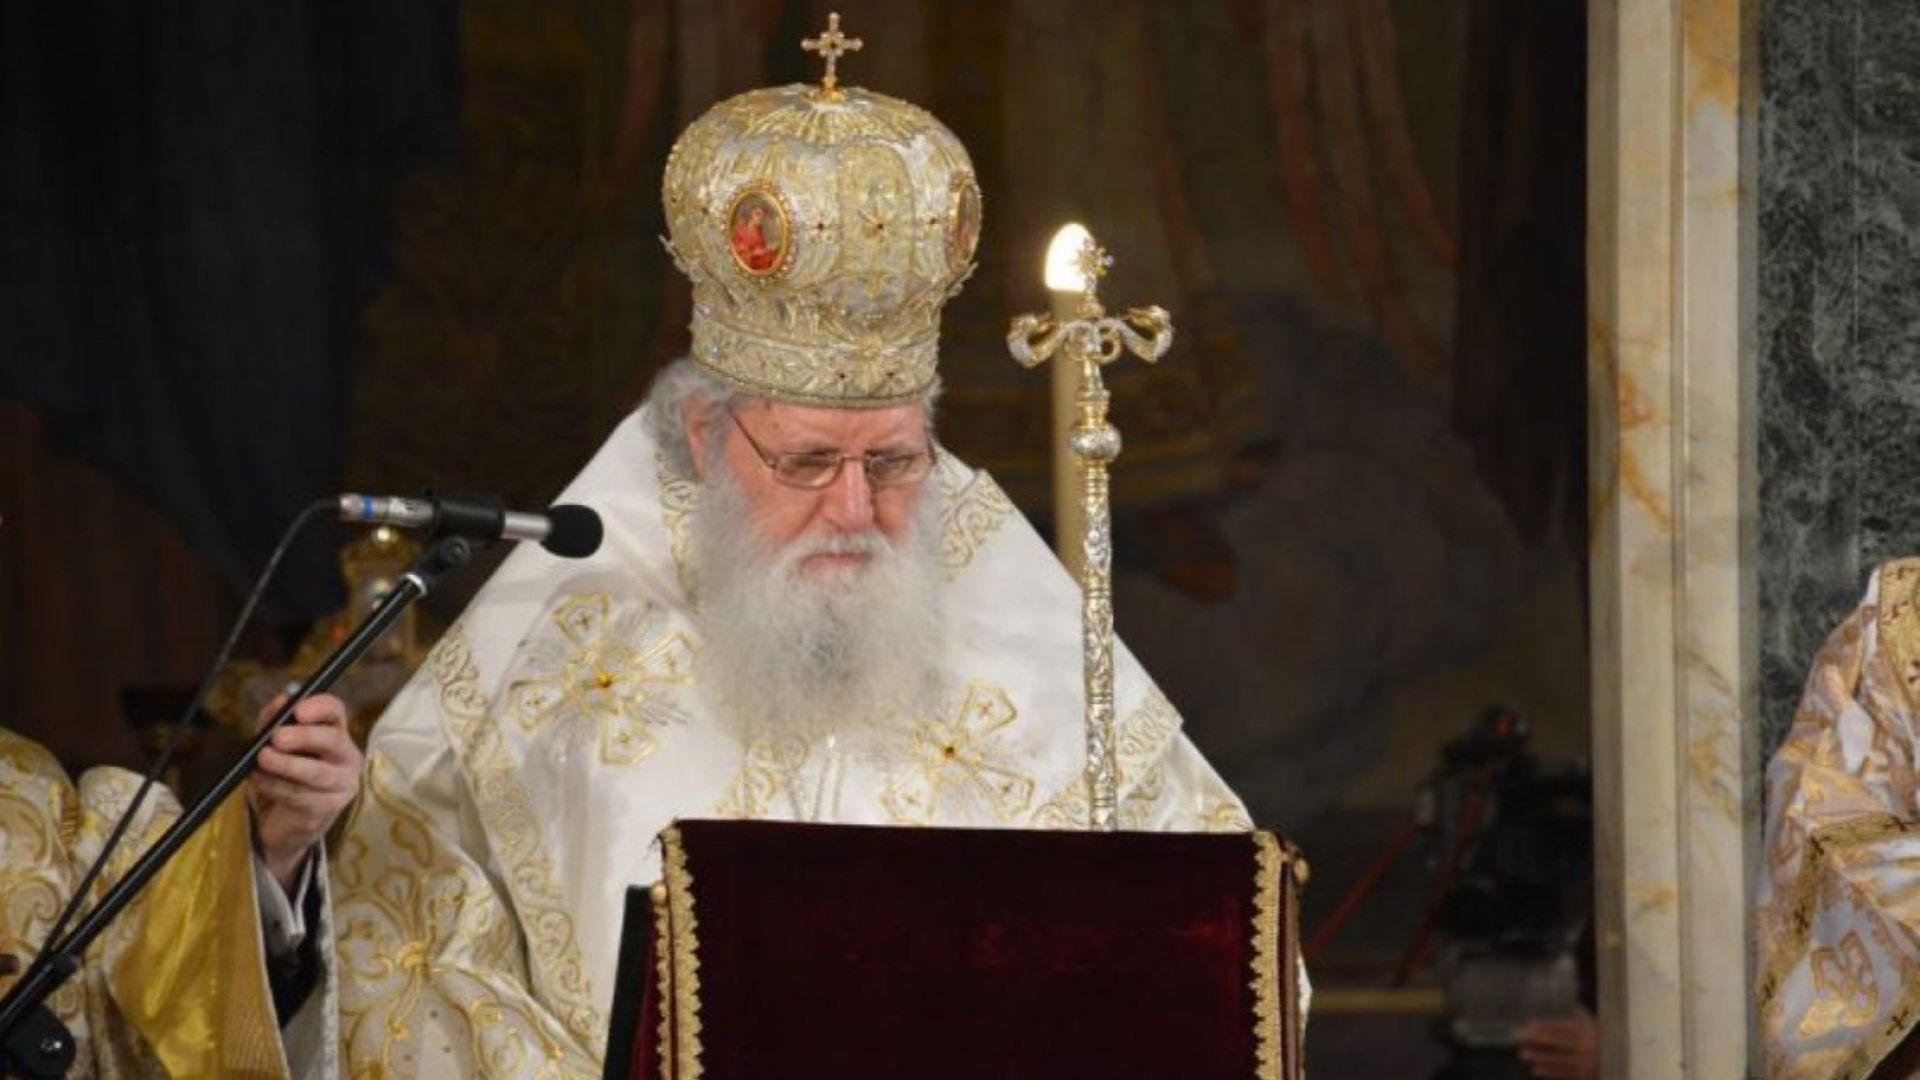 Патриарх Неофит ще отбележи 75-ия си рожден ден в уединение и молитва